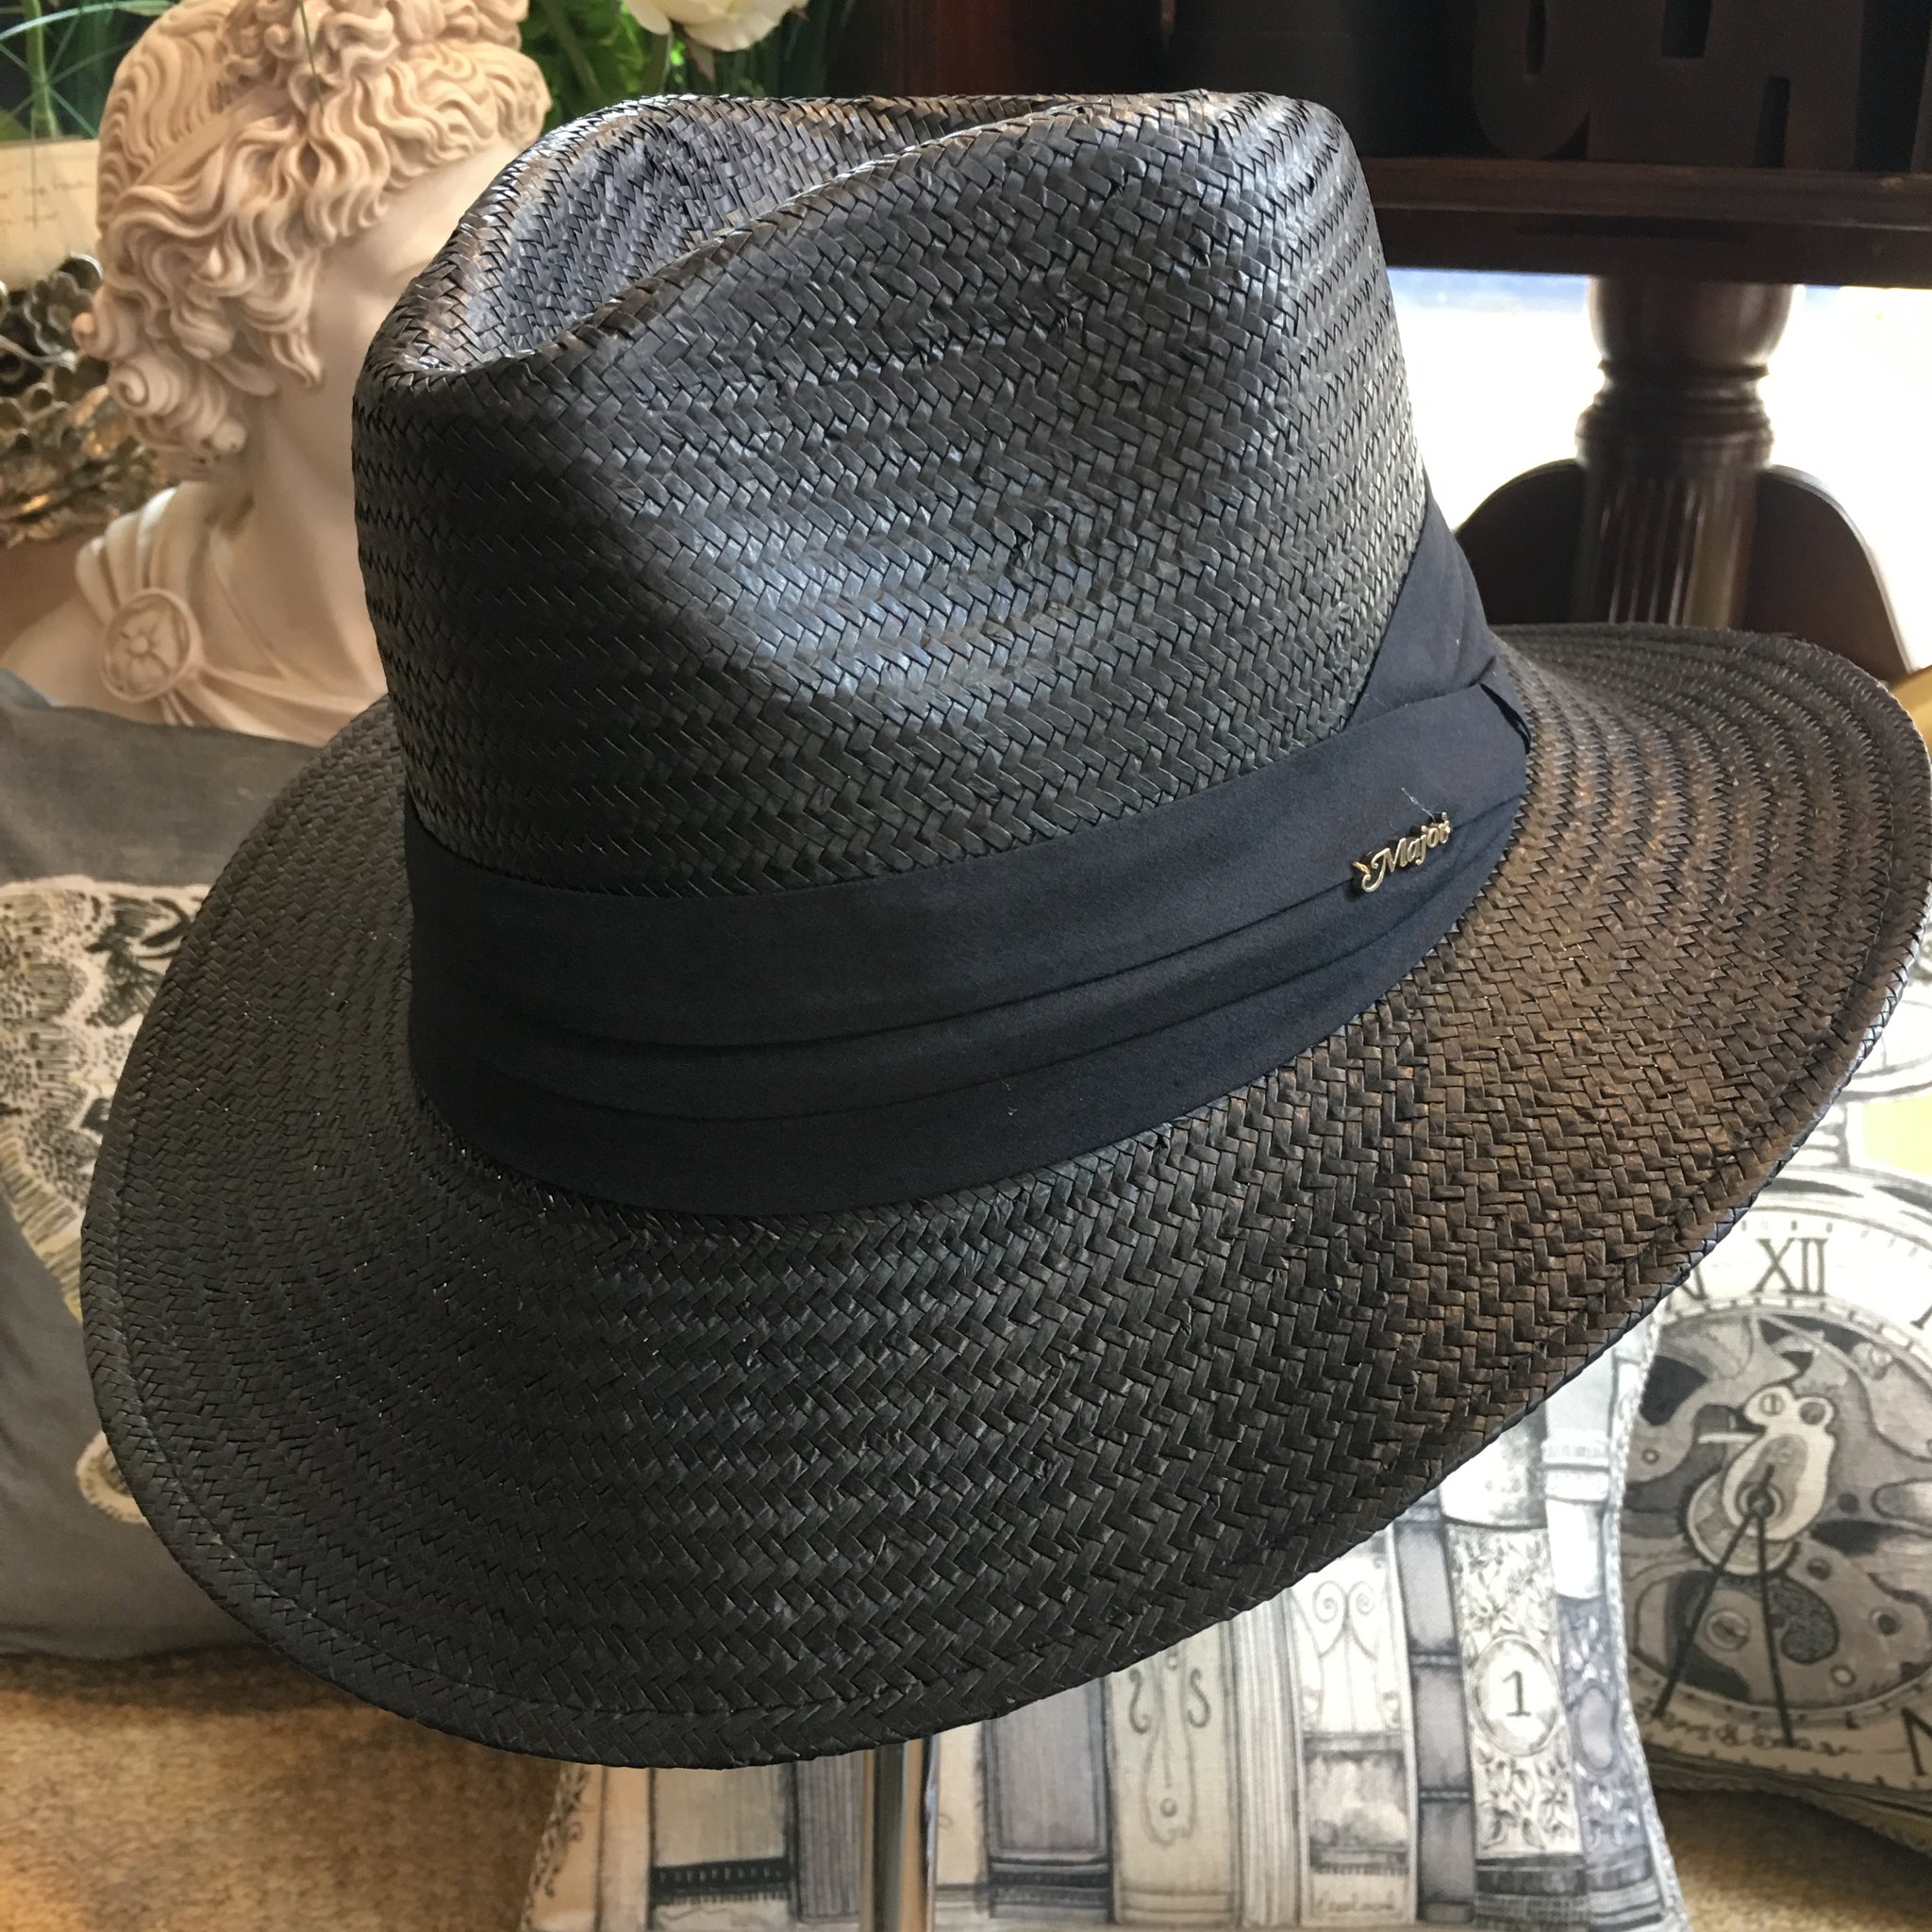 Adjustable trilby summer hat